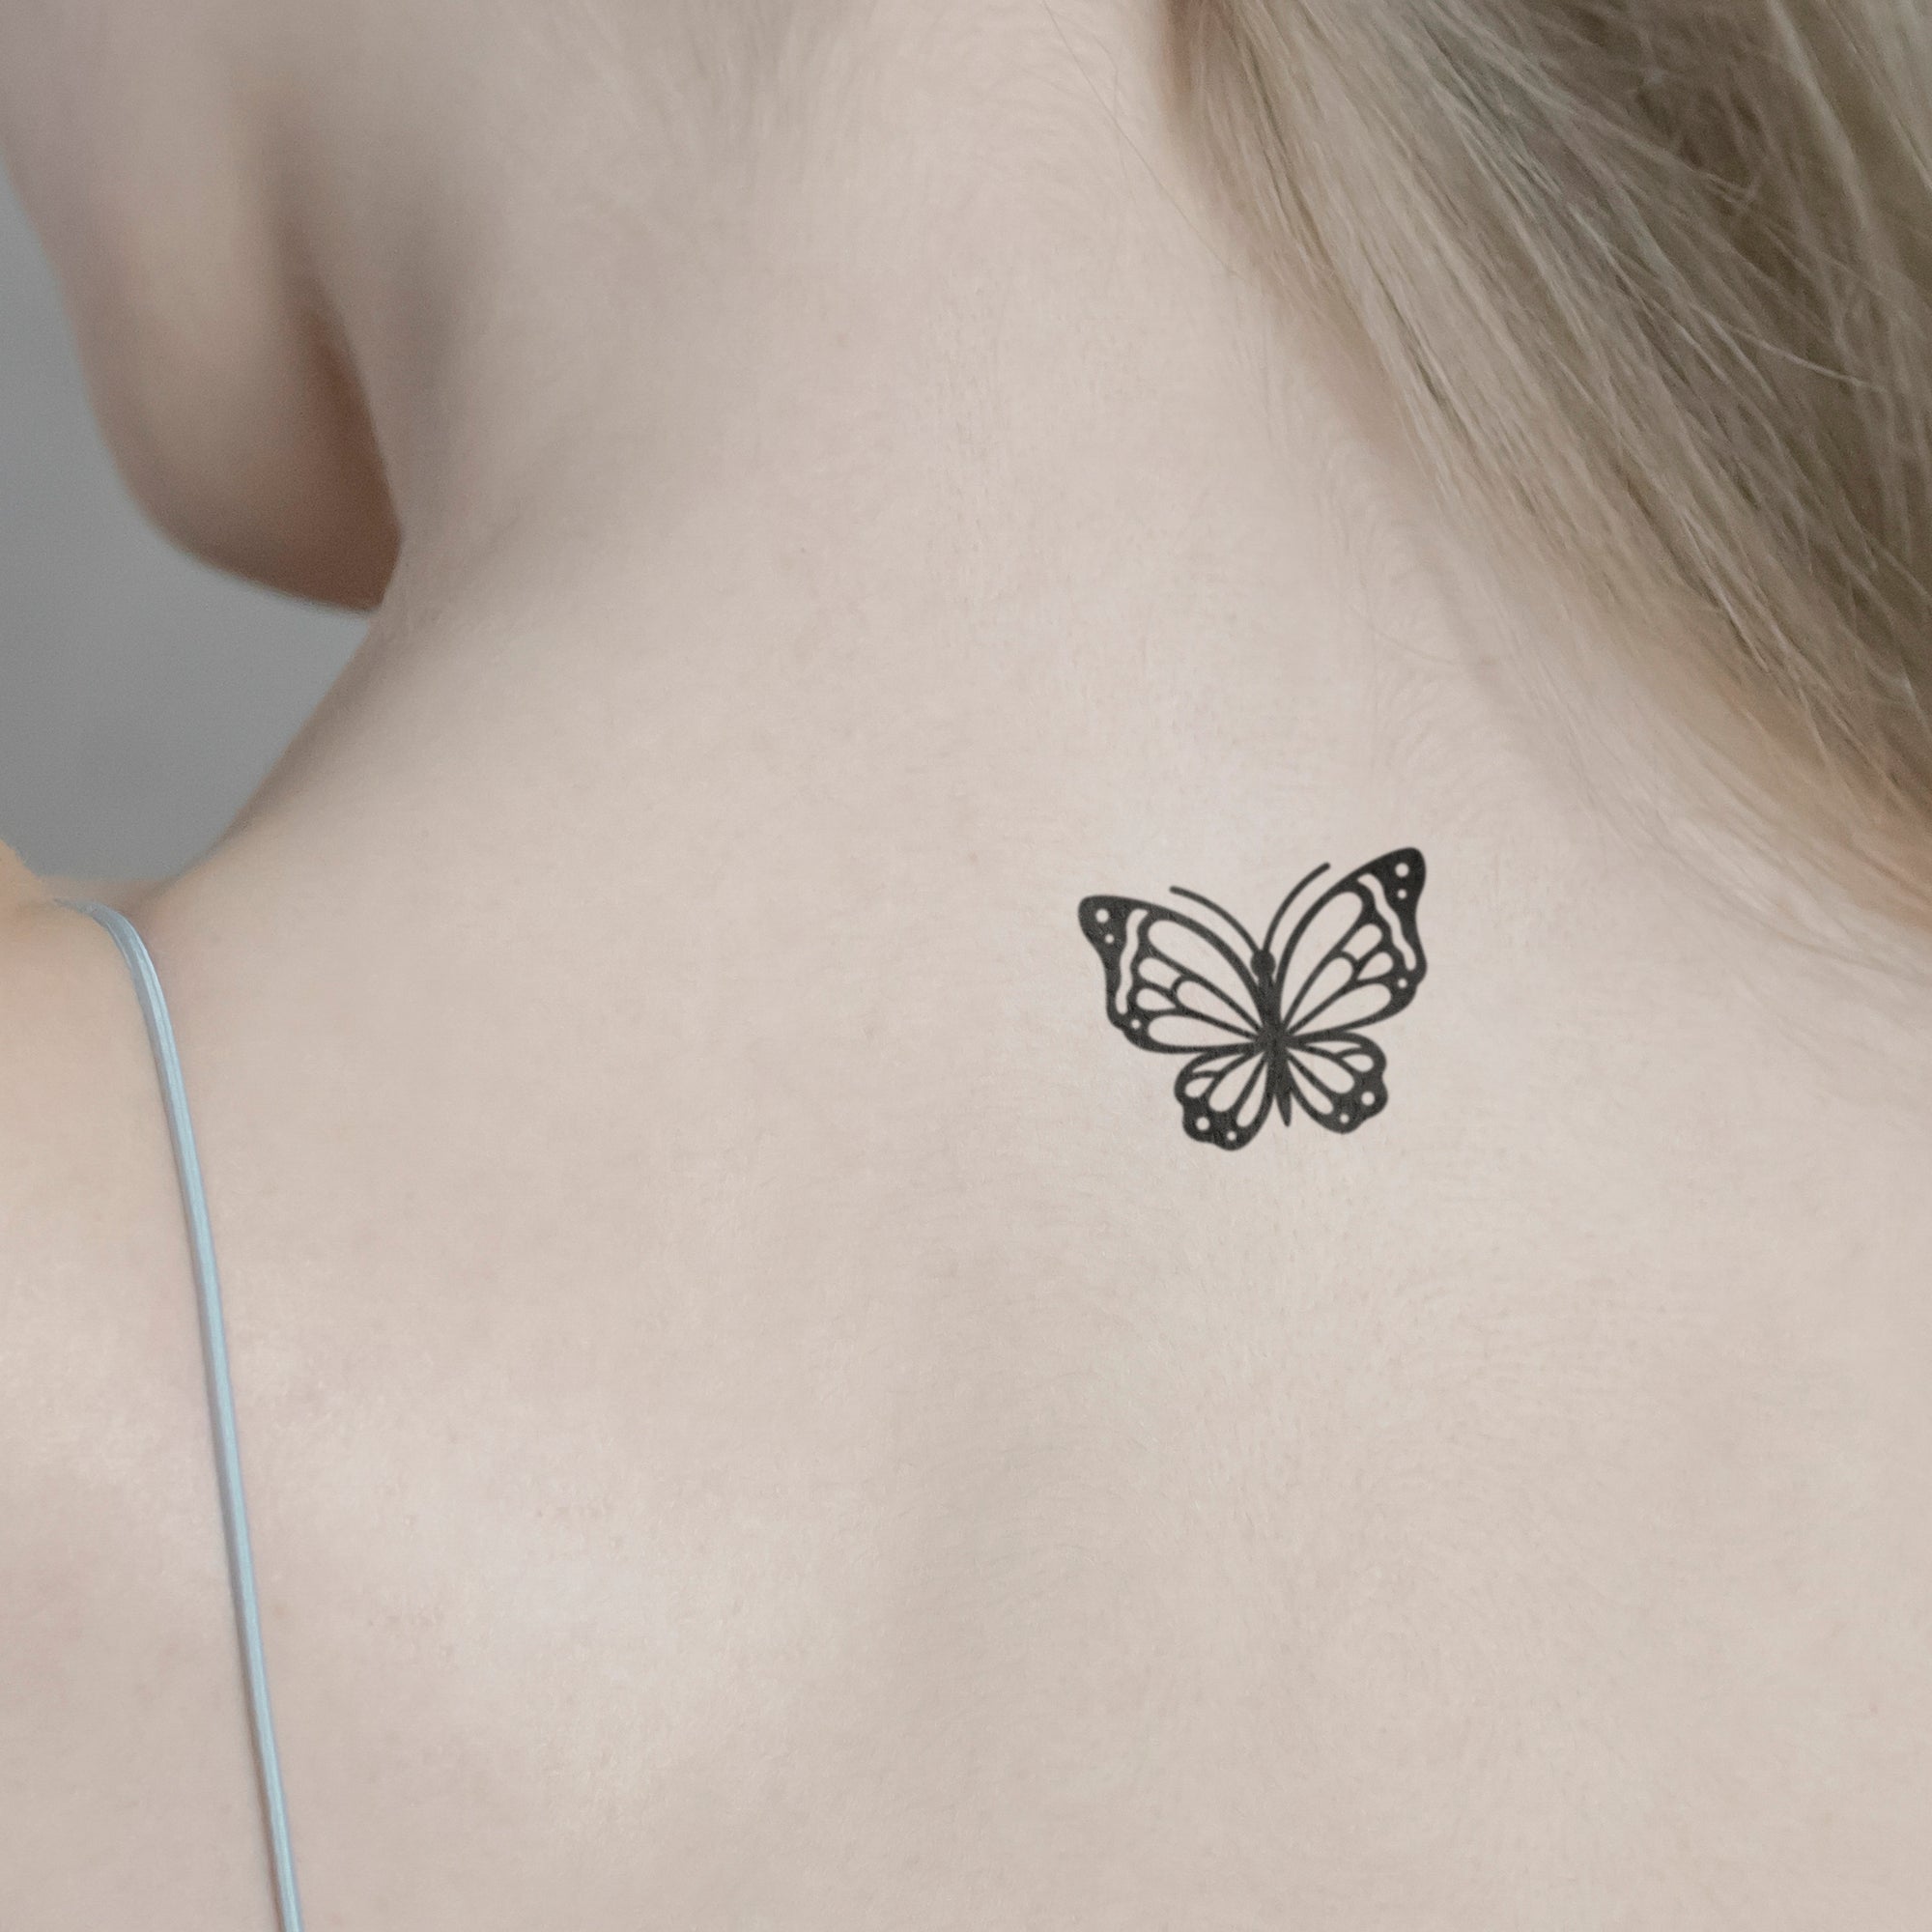 Schöner Schmetterling Tattoo von minink, der Marke für temporäre Tattoos.